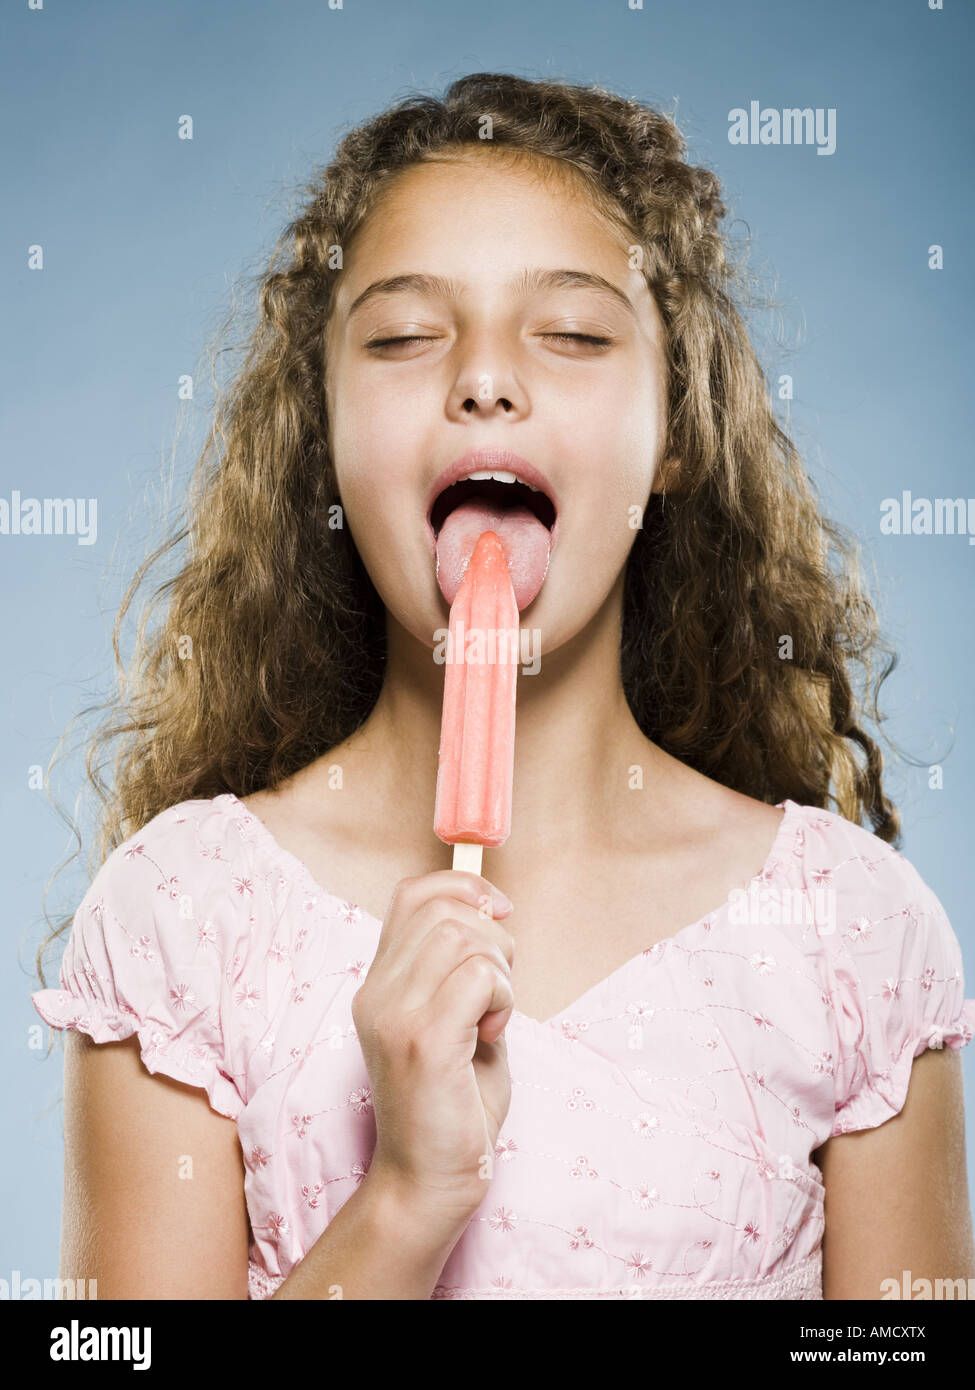 Mädchen Essen Eis Am Stiel Stockfoto Bild 15224905 Alamy